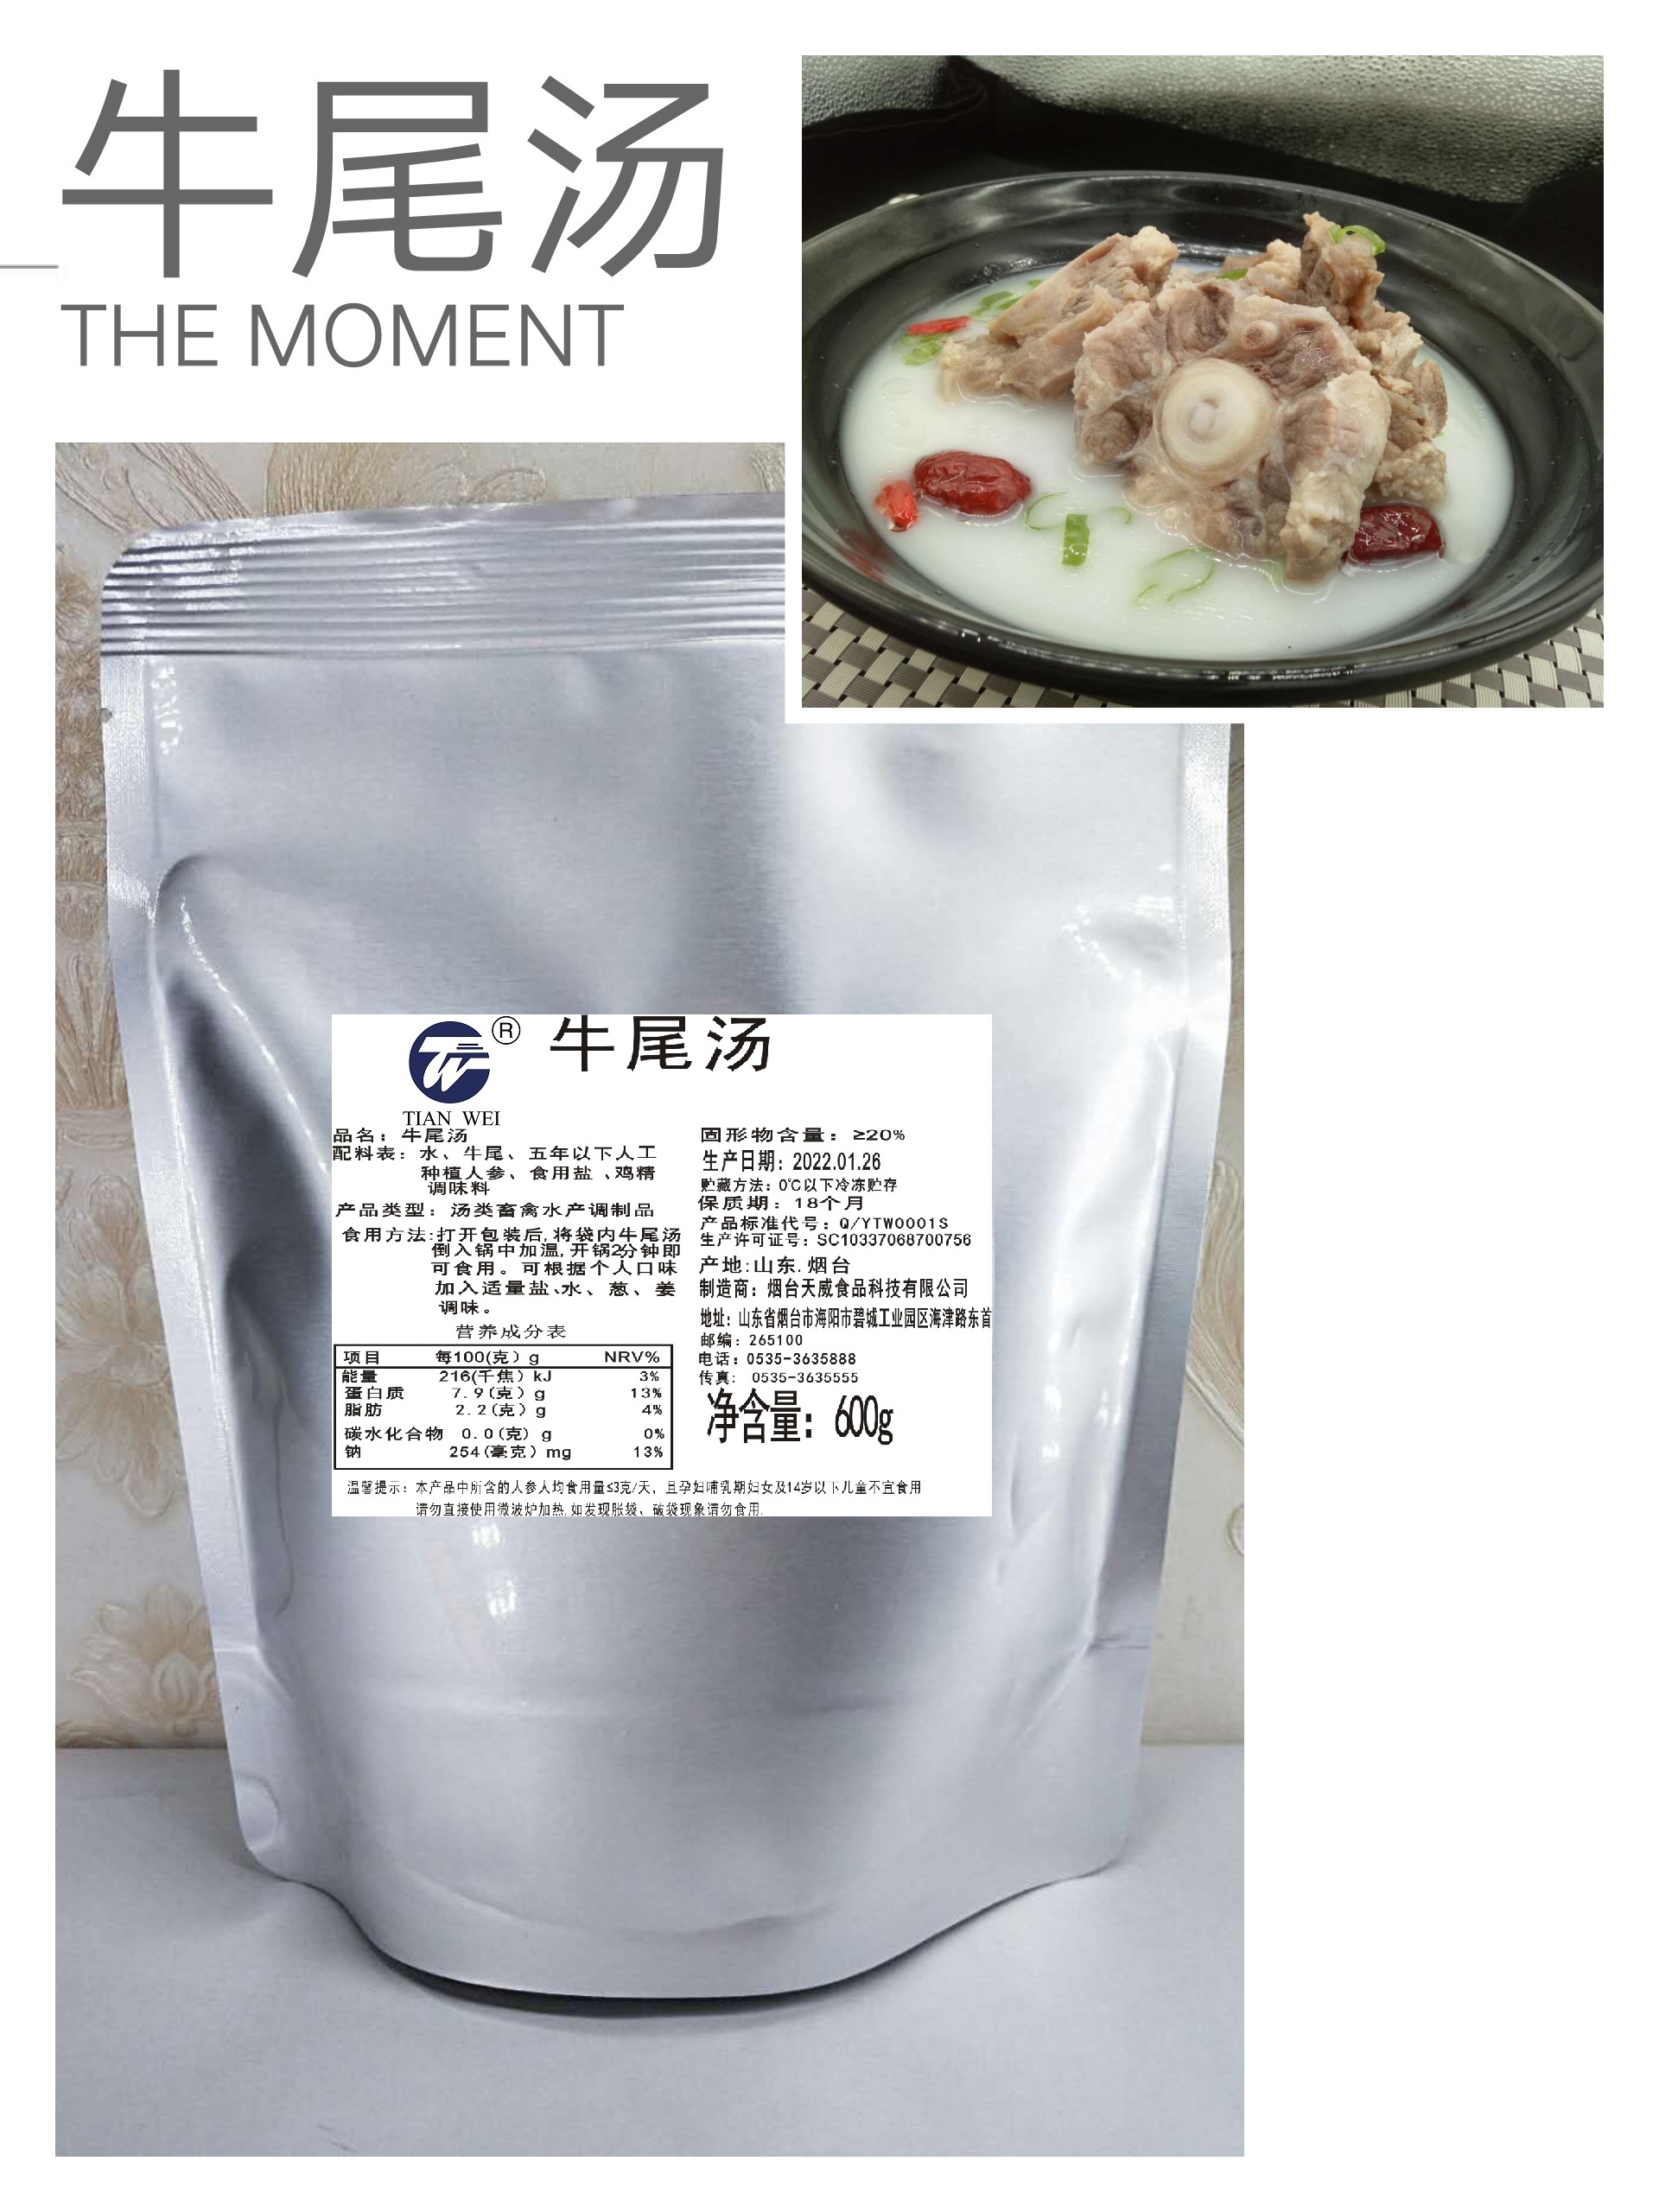 厂家直销牛尾汤拉面米线火锅专用汤底骨汤调味料速食浓缩汤浇头